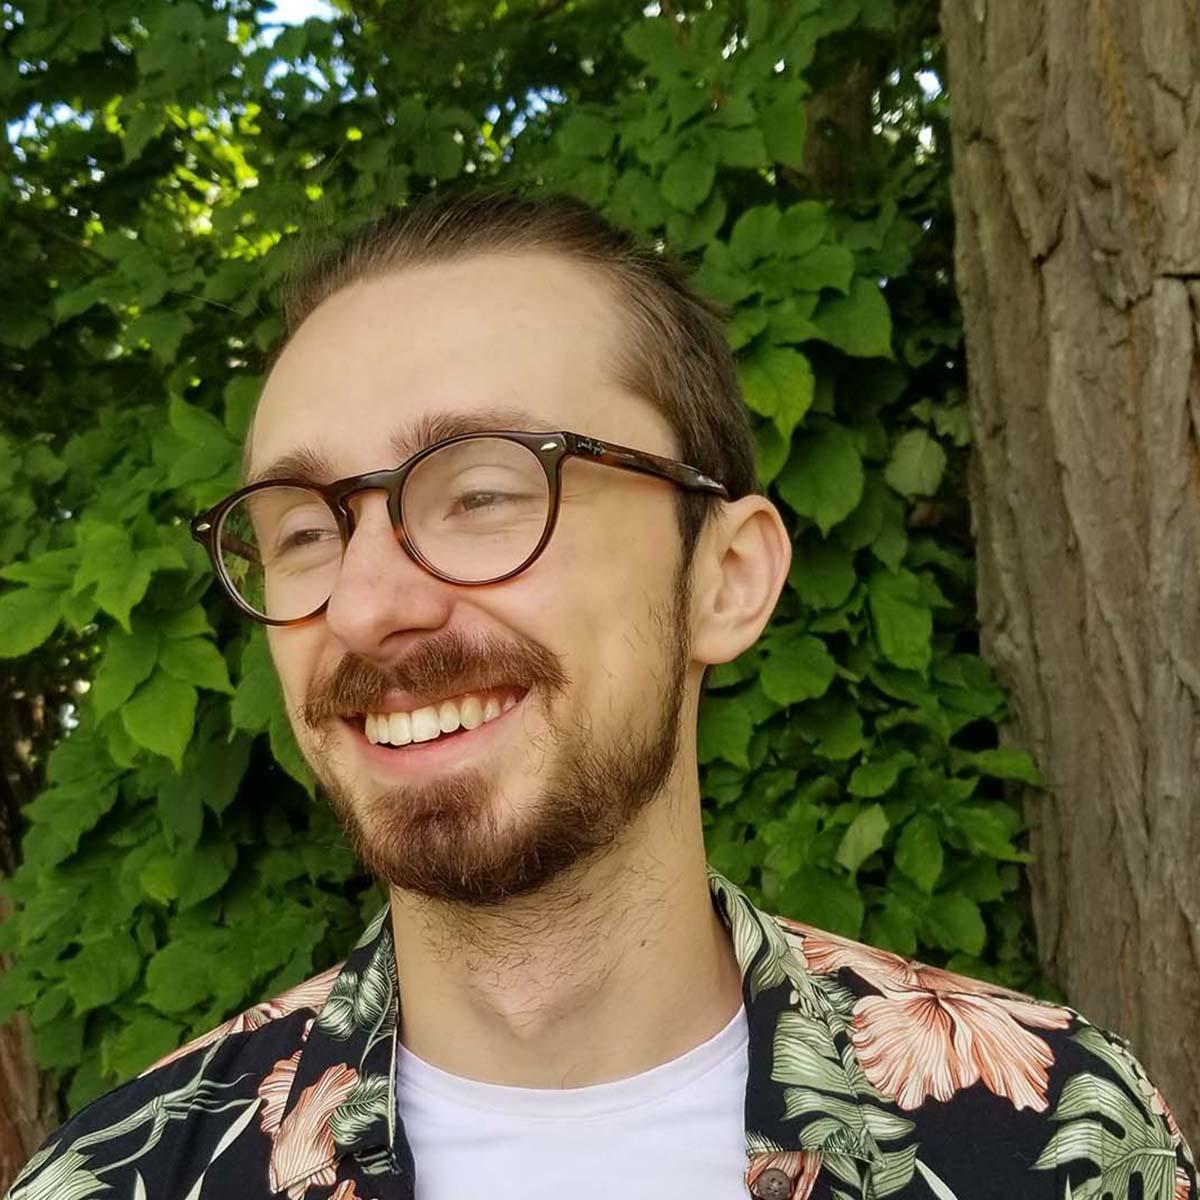 卡森·卡斯特的照片, 一个戴着眼镜，穿着鲜艳印花衬衫的白人年轻人, 在绿树前微笑